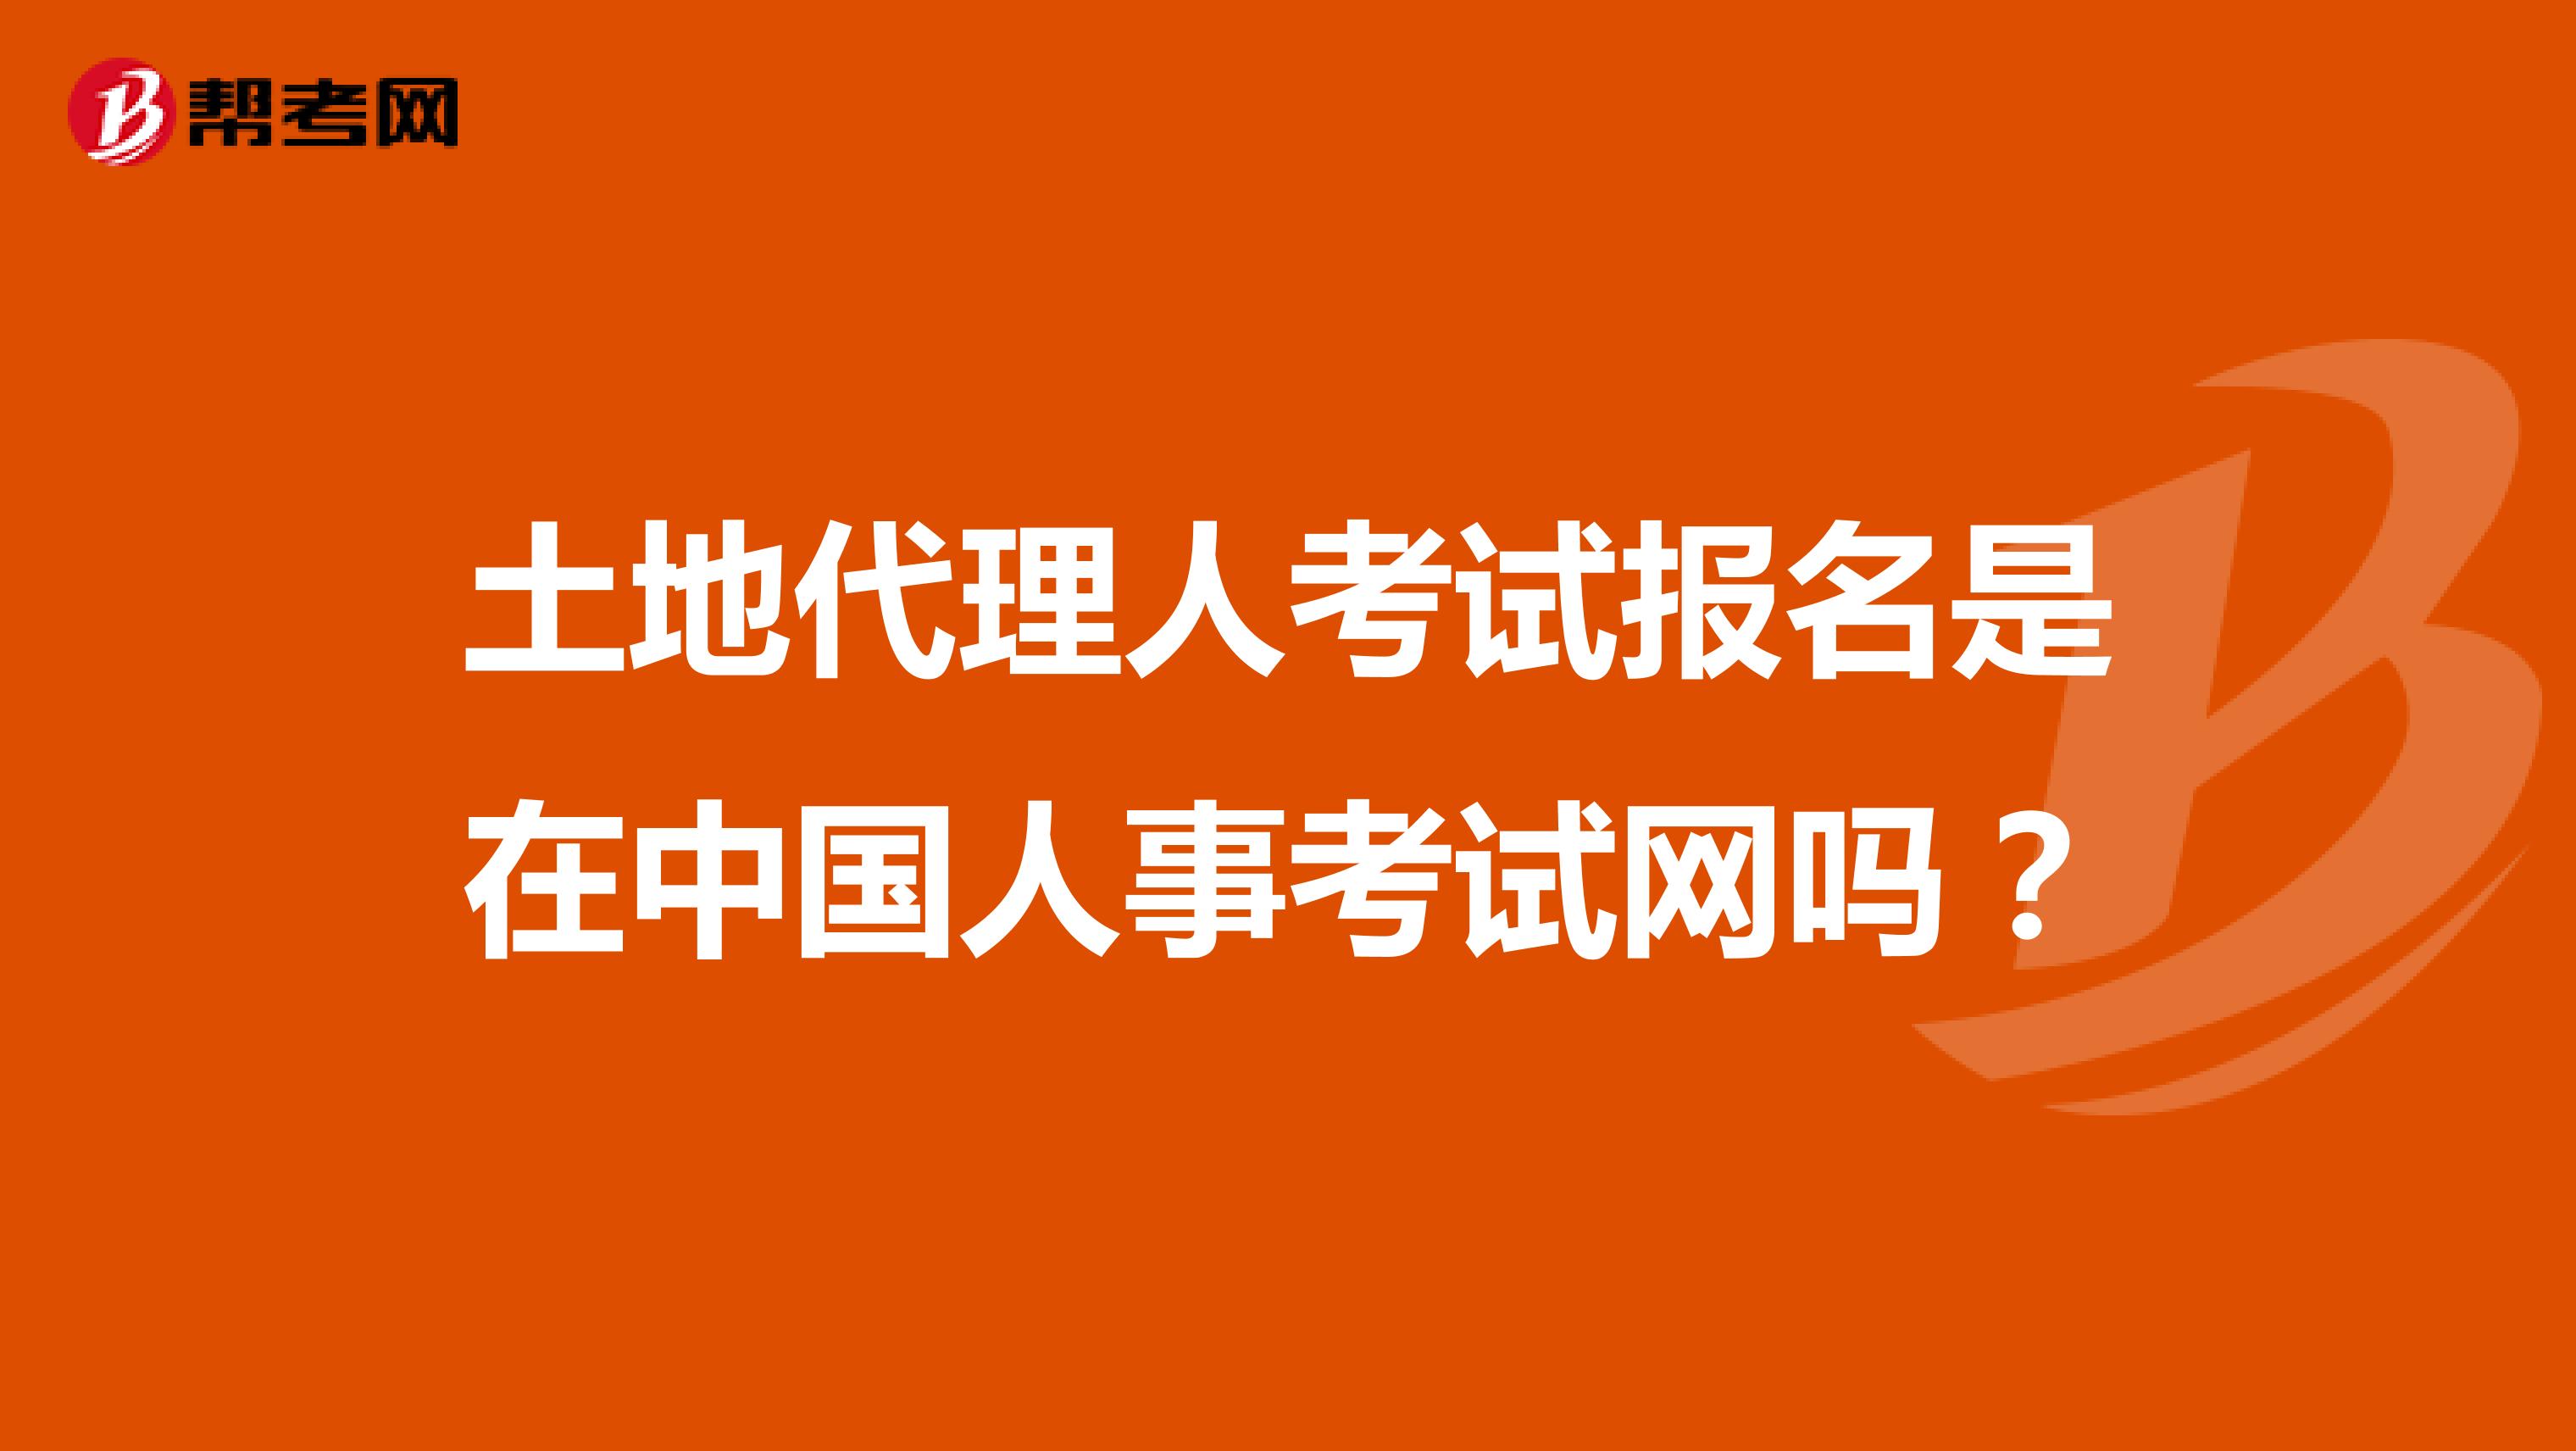 土地代理人考试报名是在中国人事考试网吗？